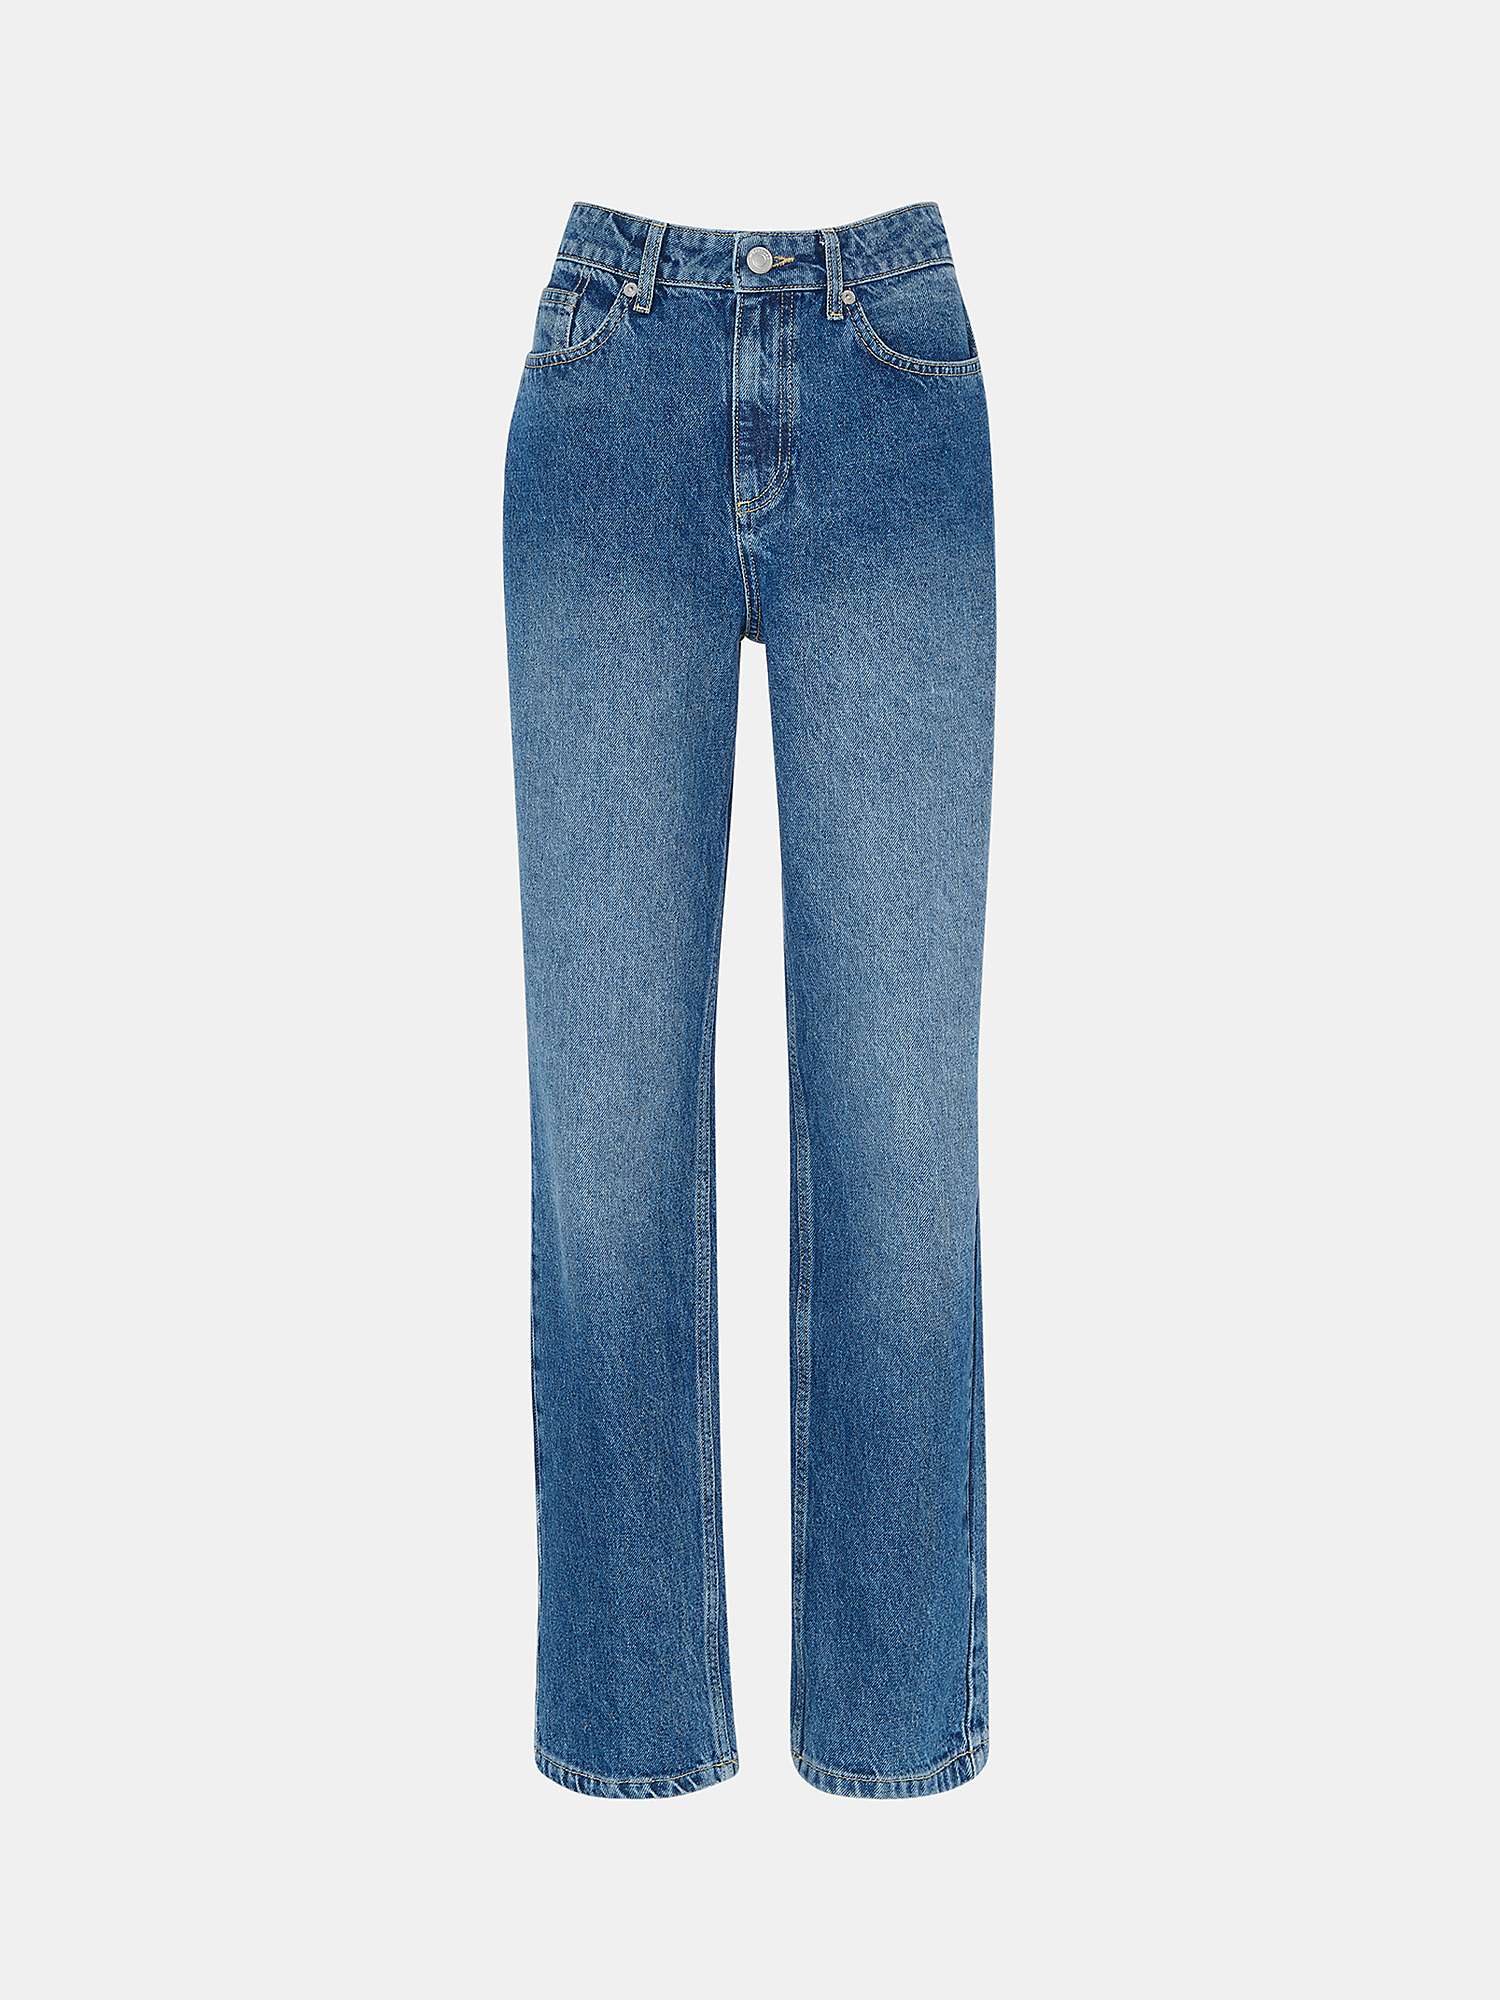 Buy Whistles Petite Straight Leg Full Length Jeans, Denim Online at johnlewis.com